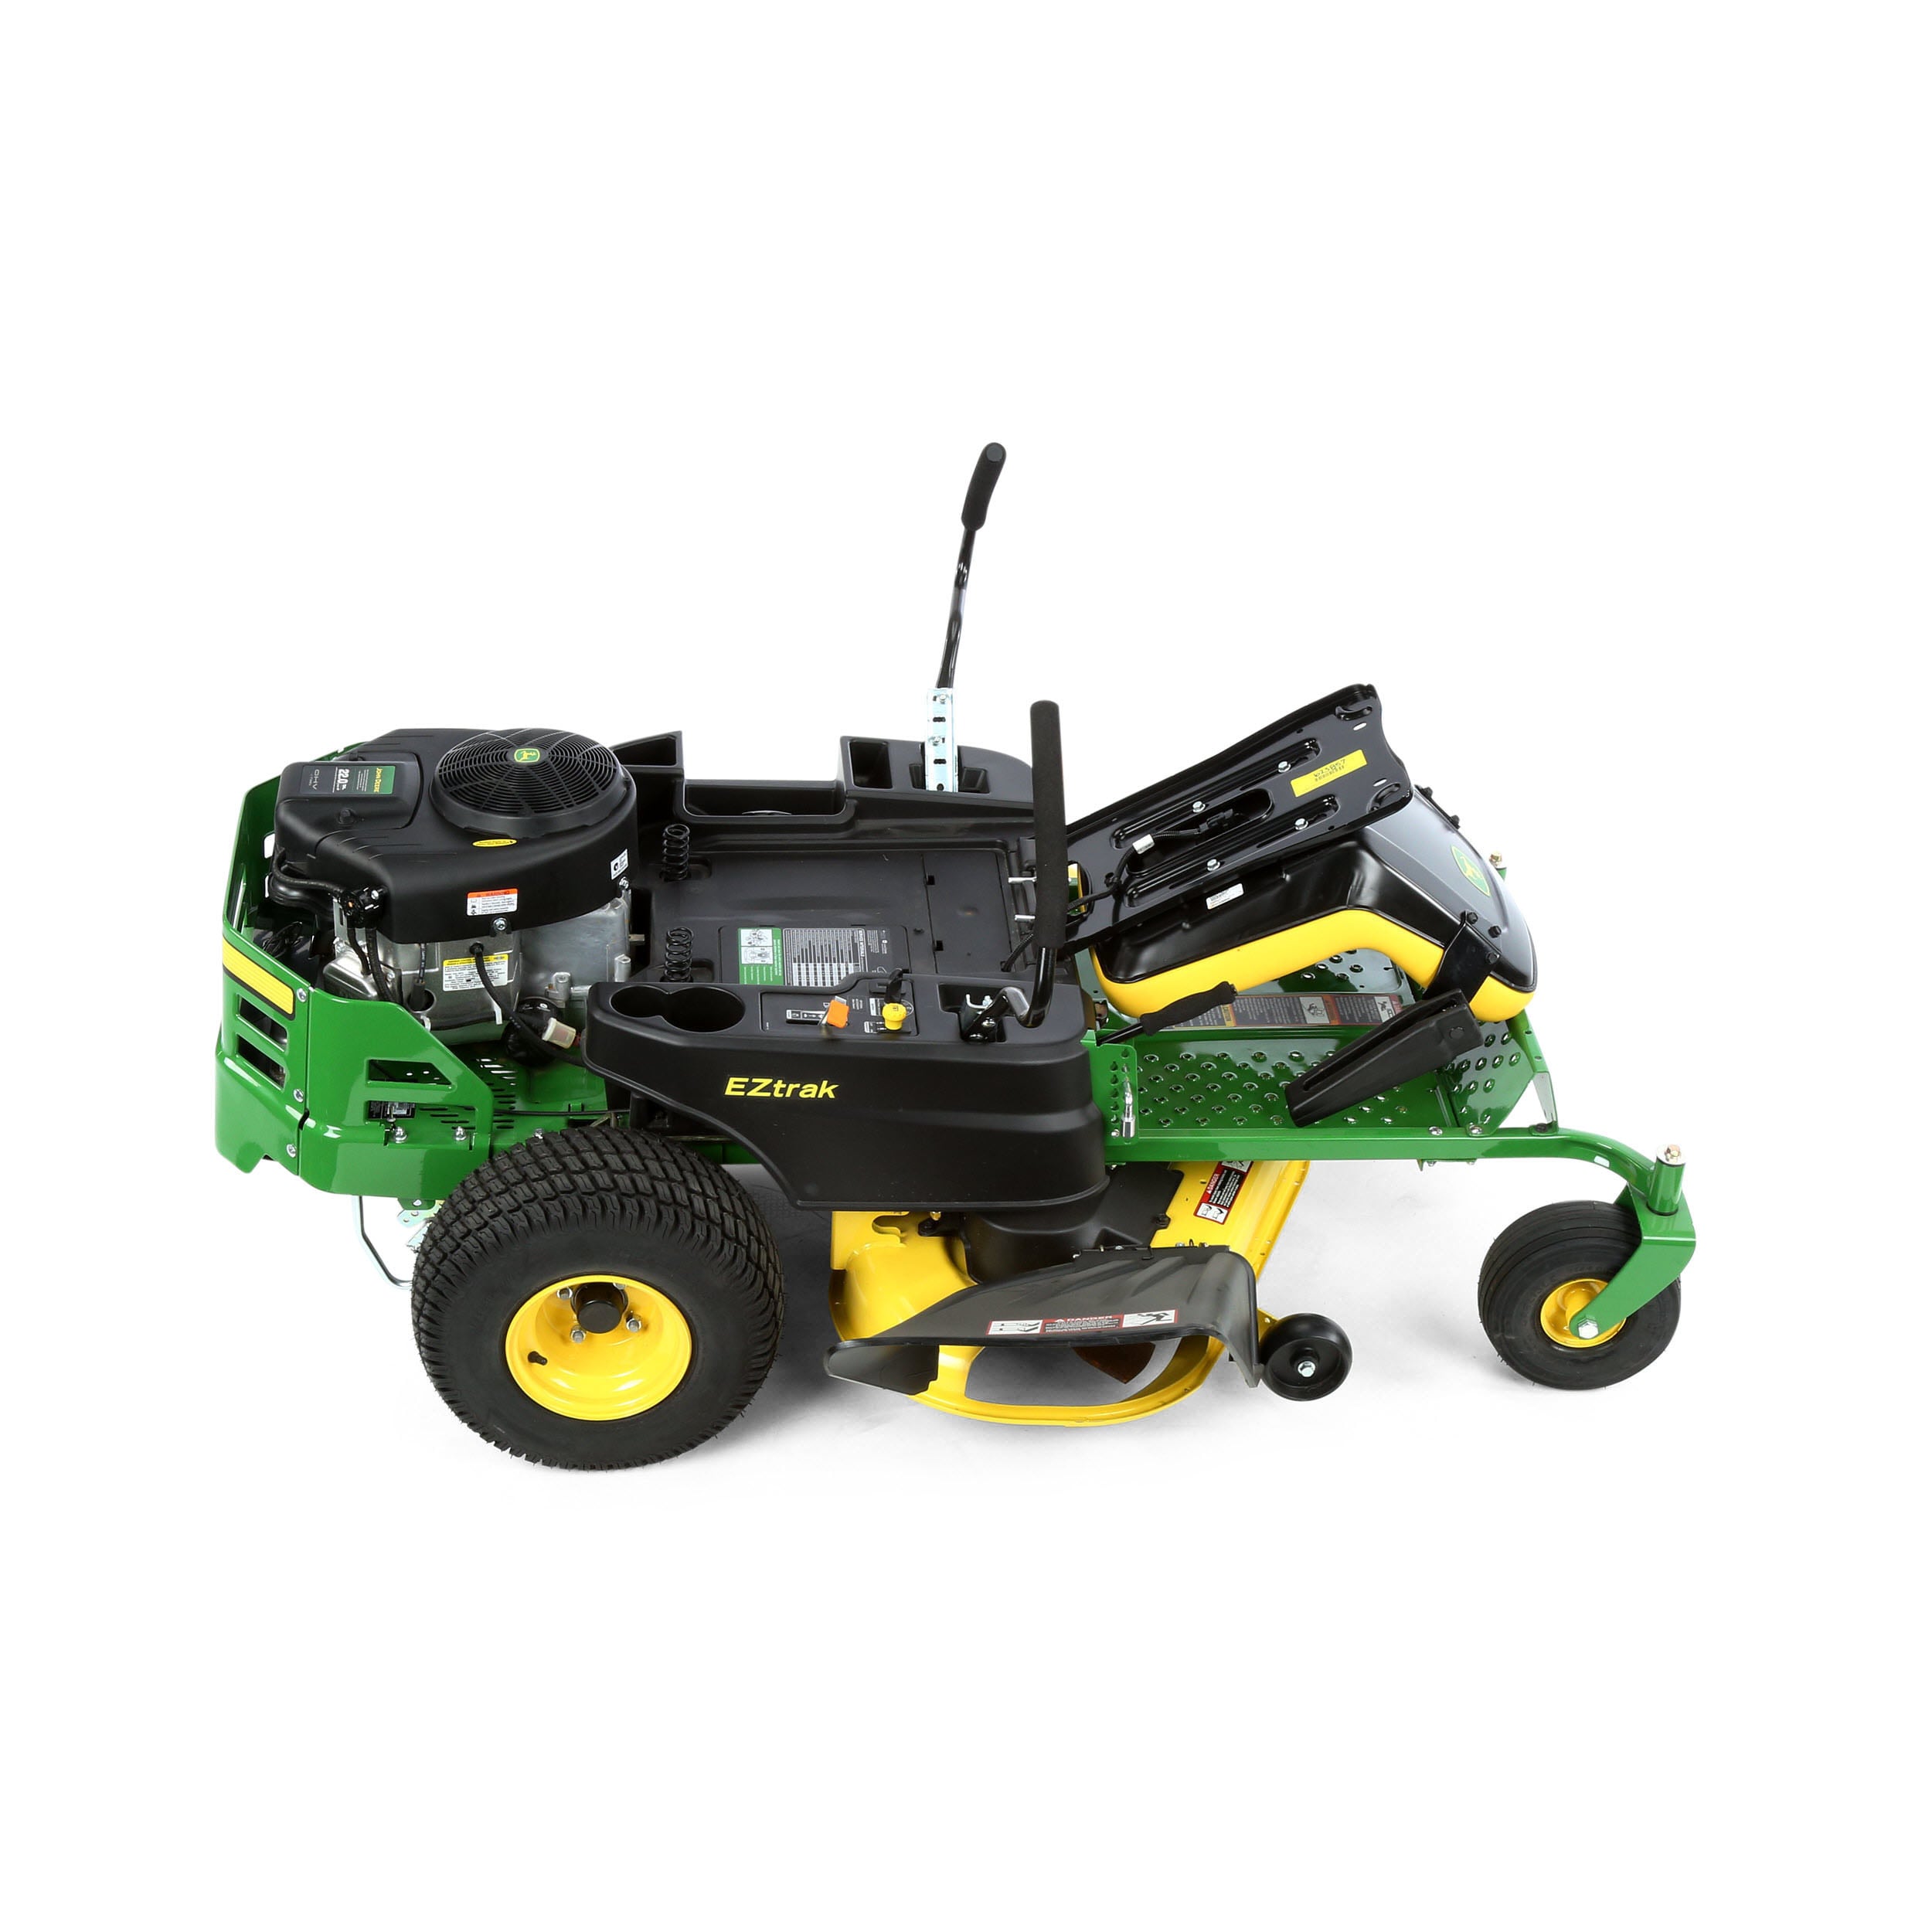 John Deere Z255 48-in 22-HP V-twin Zero-turn Lawn Mower in the Gas